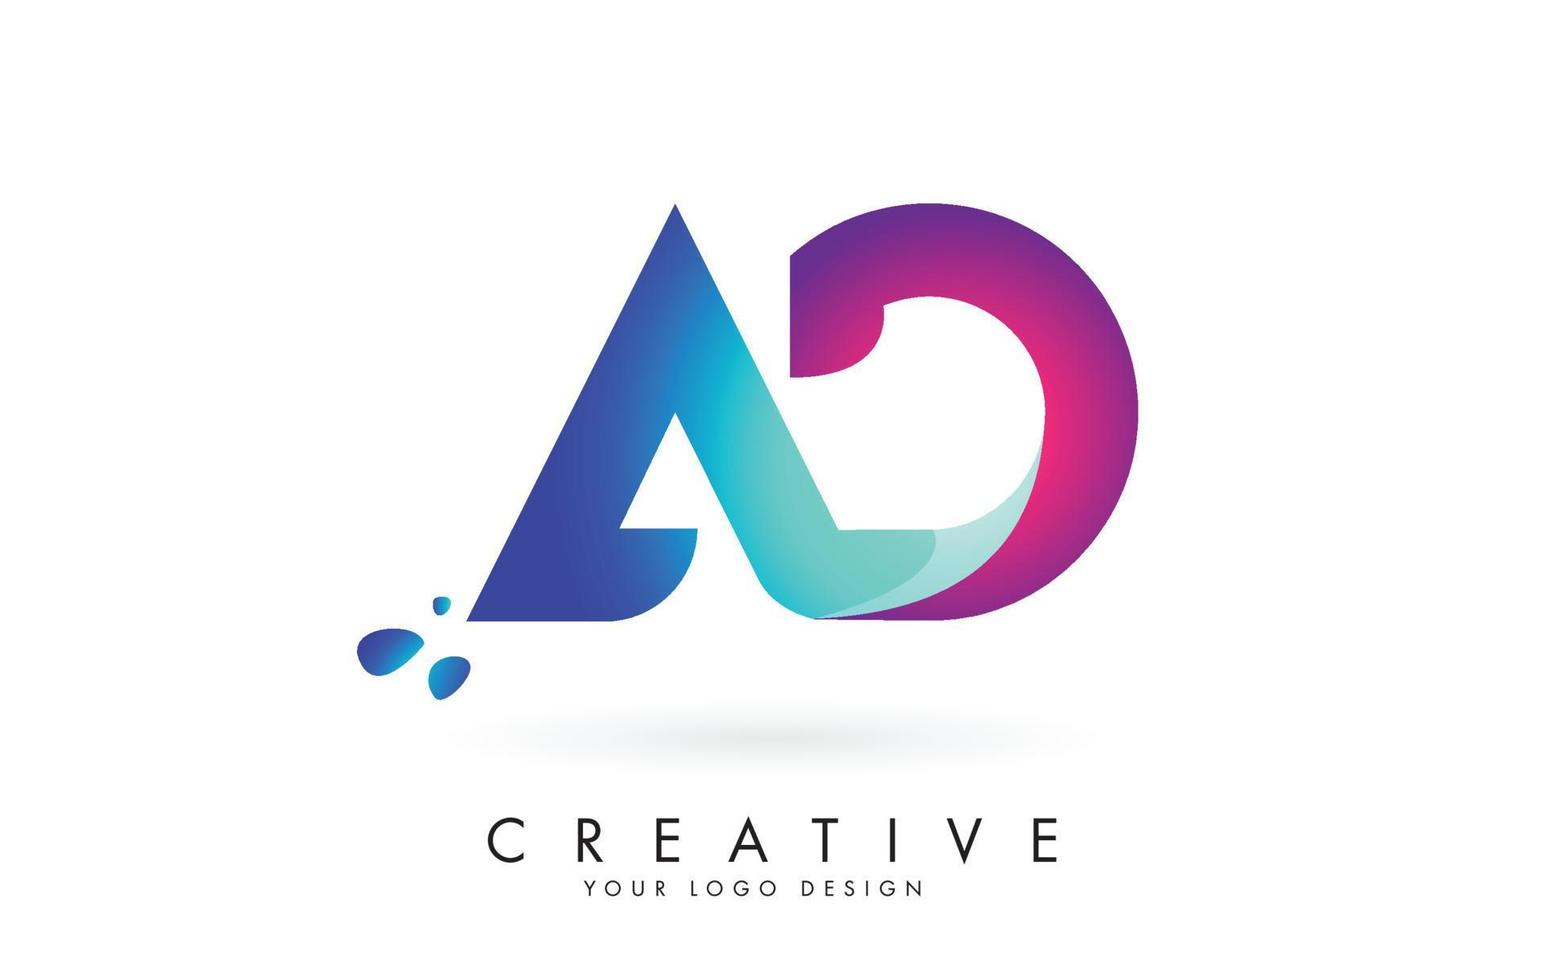 blå och rosa kreativa bokstavsannonsannonslogotypdesign. företagsunderhållning, media, teknik, digital affärsvektordesign. vektor